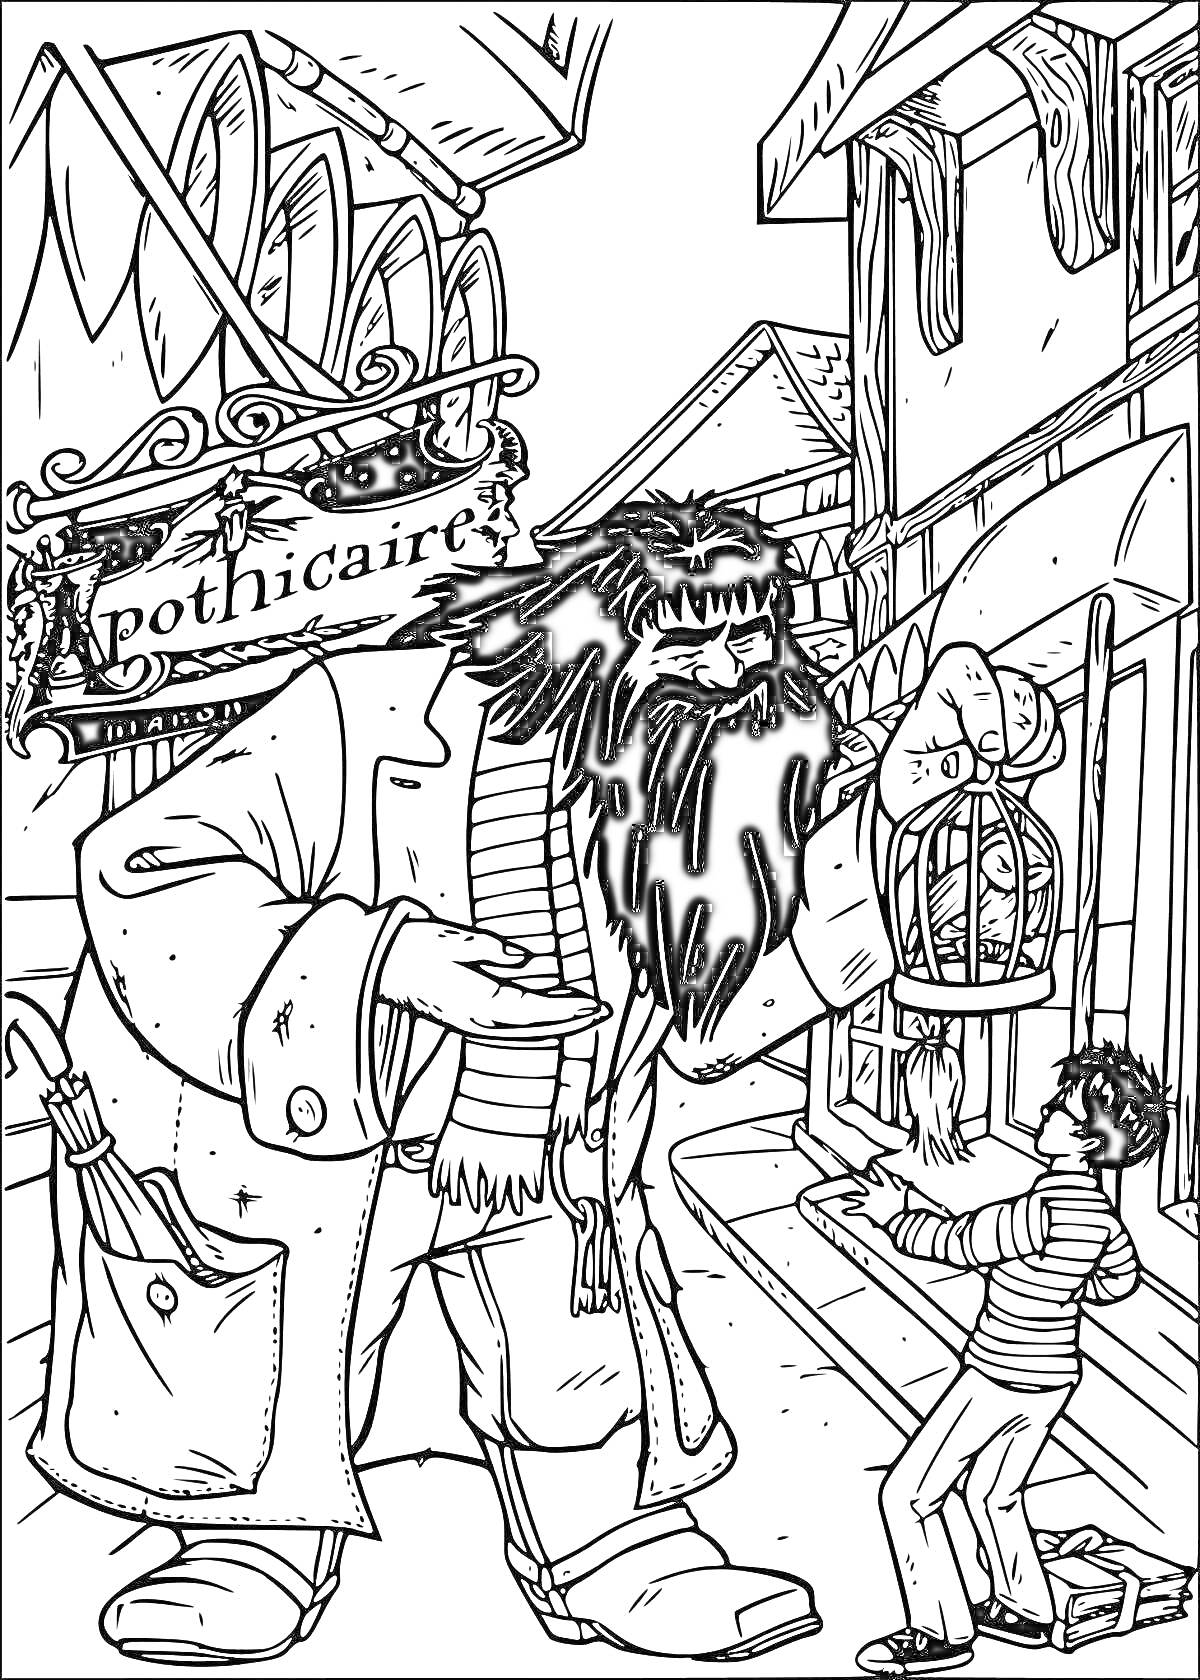 Хагрид и Гарри в Косом переулке, Хагрид держит клетку с совой